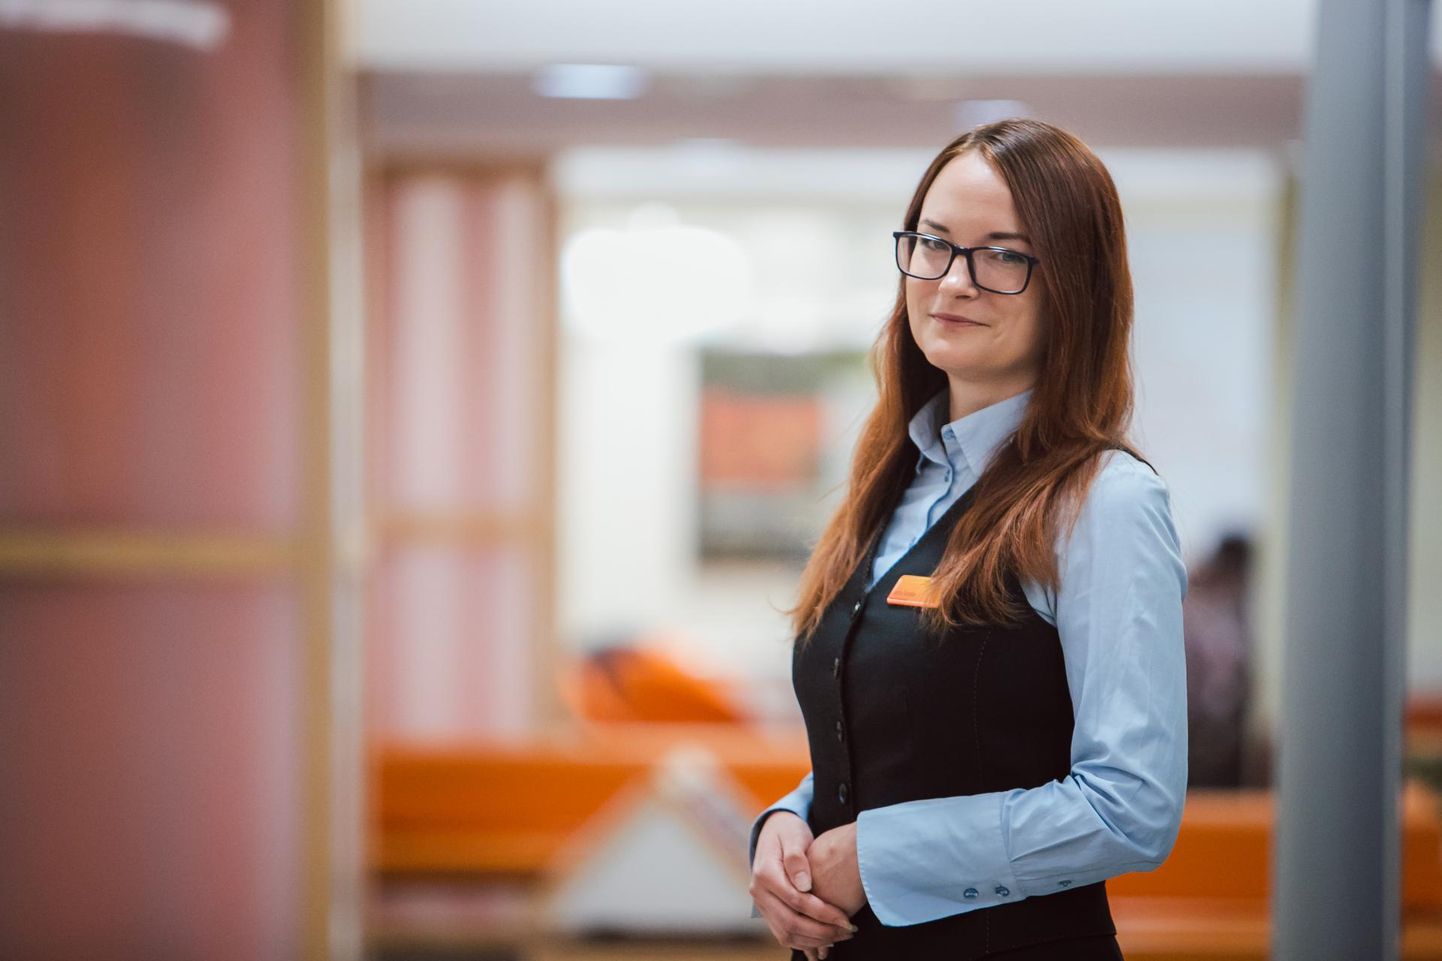 Swedbanki kliendinõustaja Kertu Soodla on Eesti paremuselt teine klienditeenindaja. Oma töös peab ta oluliseks suhtuda kõikidesse klientidesse võrdselt ja anda endast kõik, et iga inimese mure saaks lahenduse.